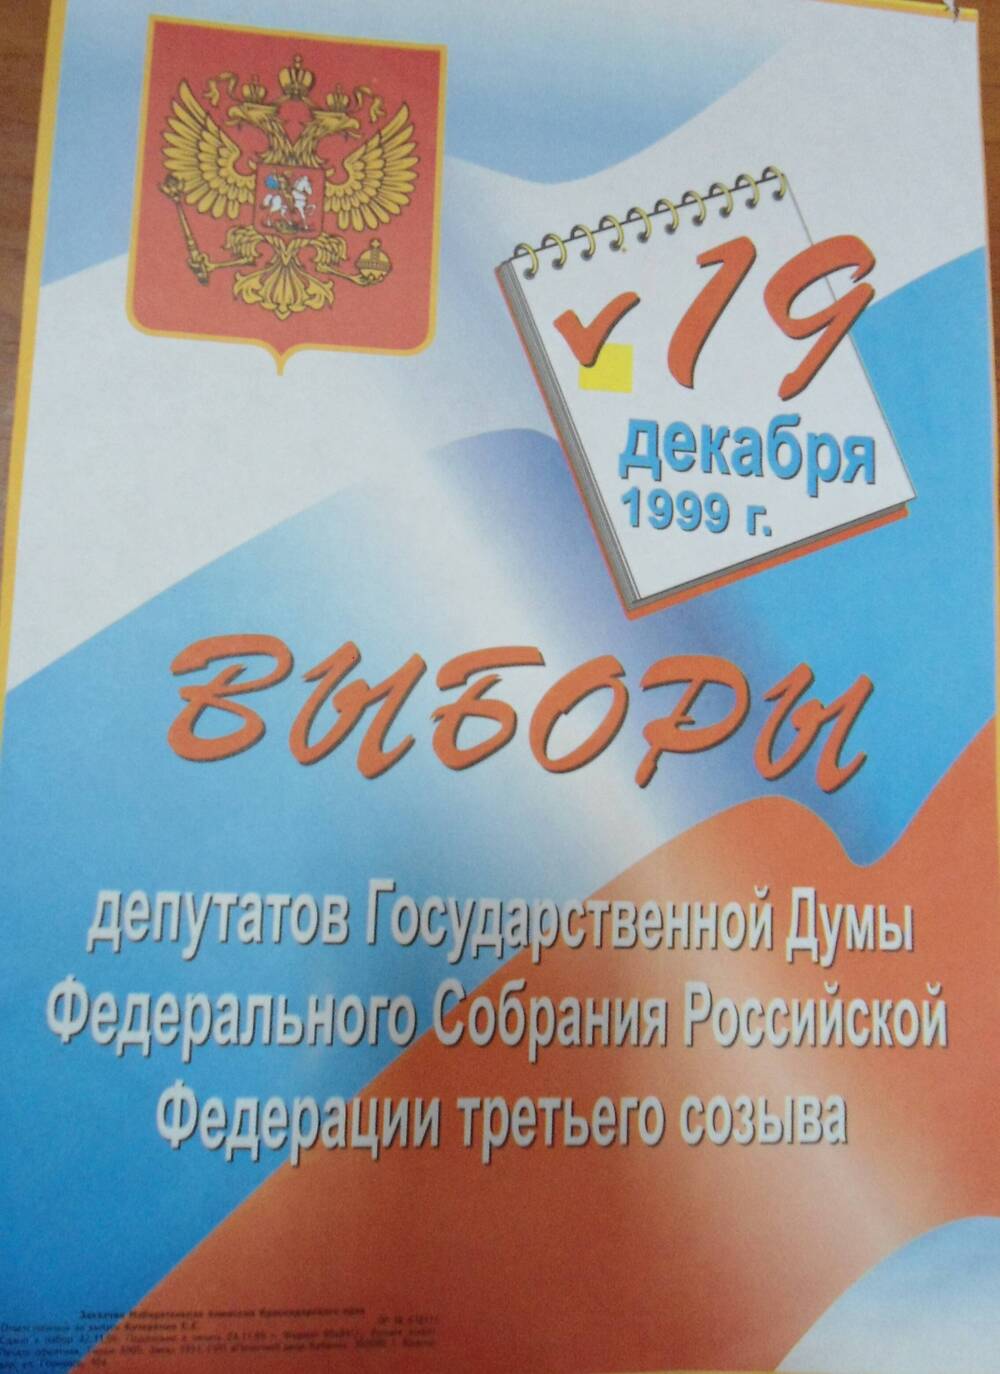 Плакат. Выборы  депутатов Государственной Думы, избирательная комиссия Краснодарского края  19 декабря 1999 г.